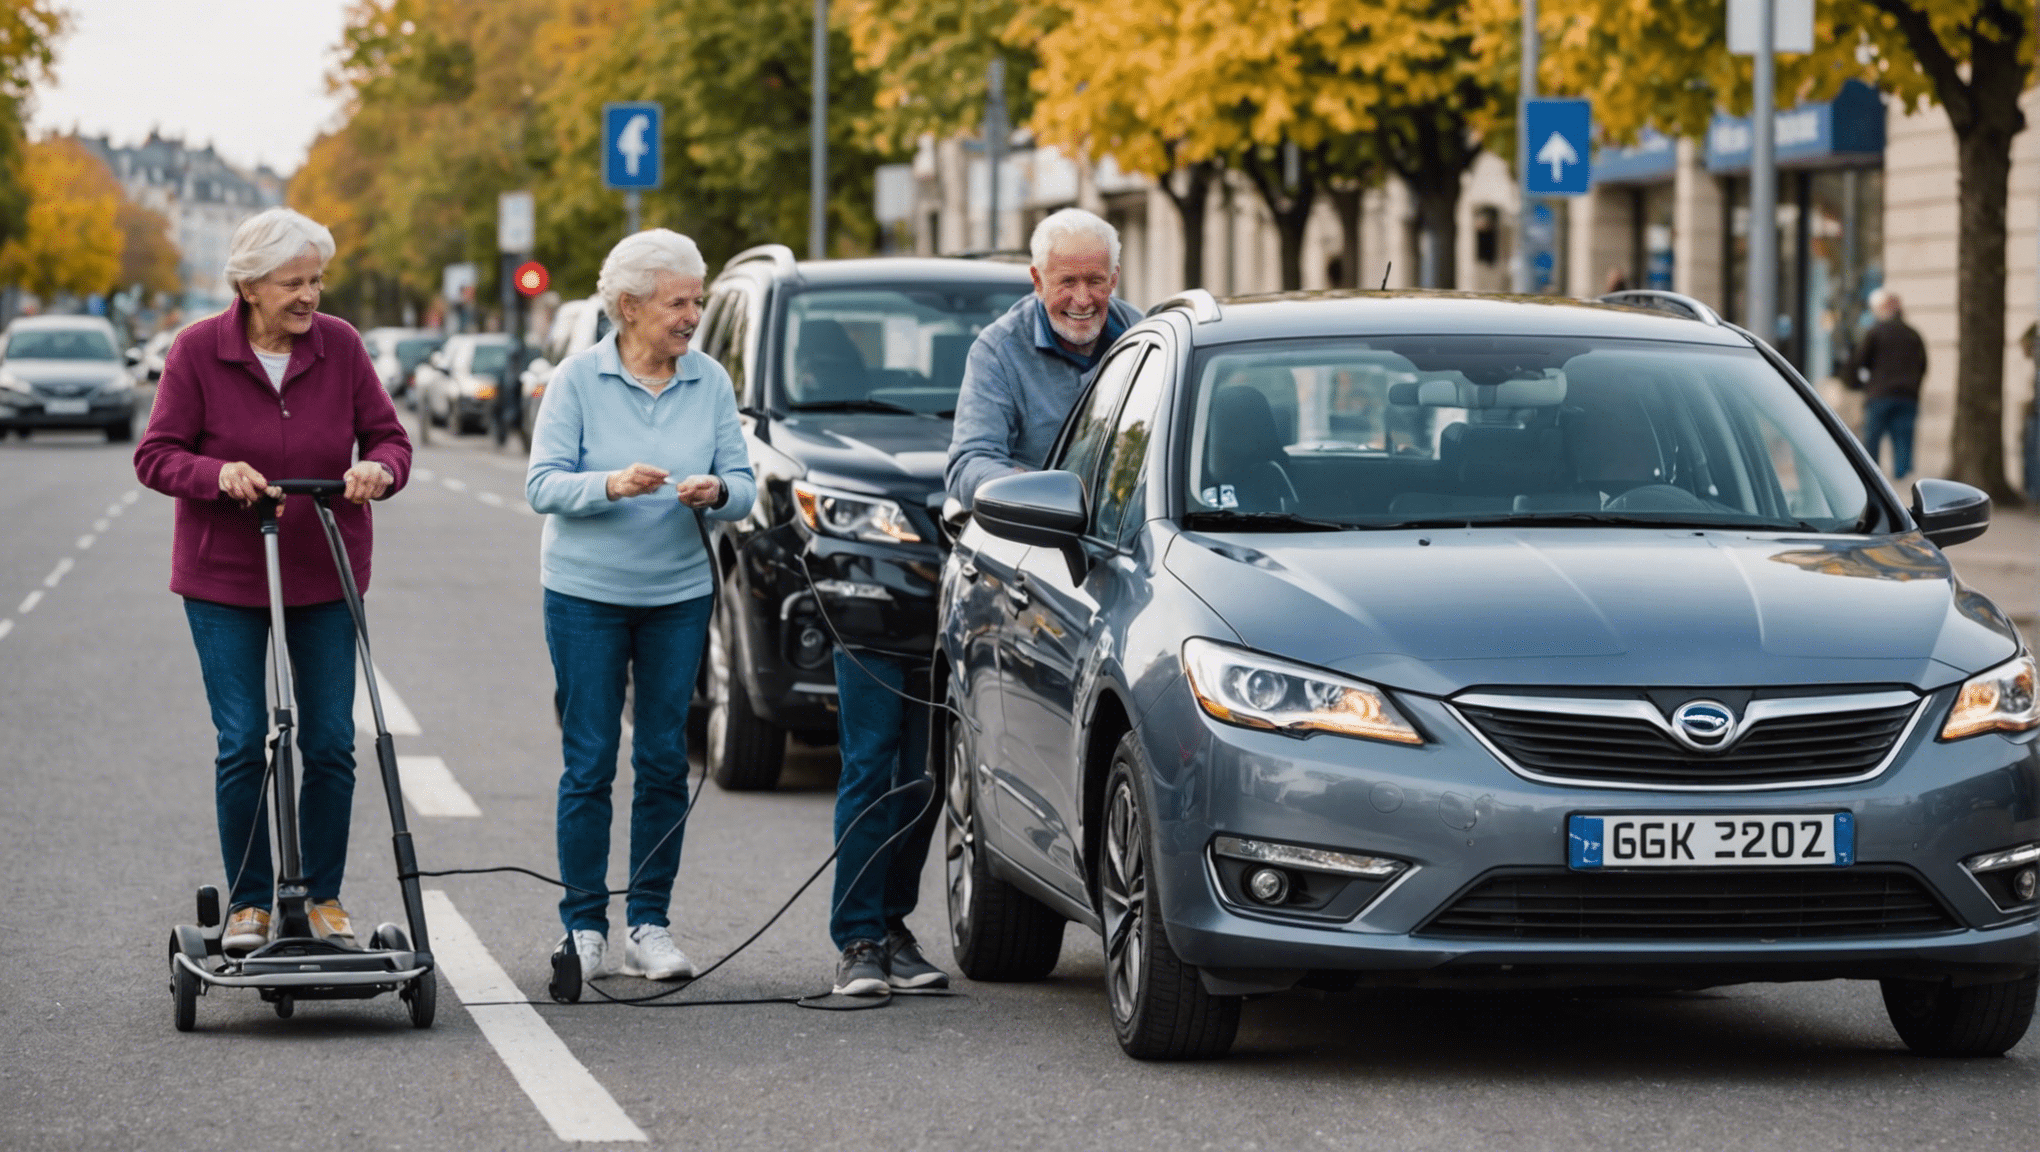 découvrez comment adapter les véhicules pour répondre aux besoins spécifiques des seniors et améliorer leur mobilité en toute sécurité.